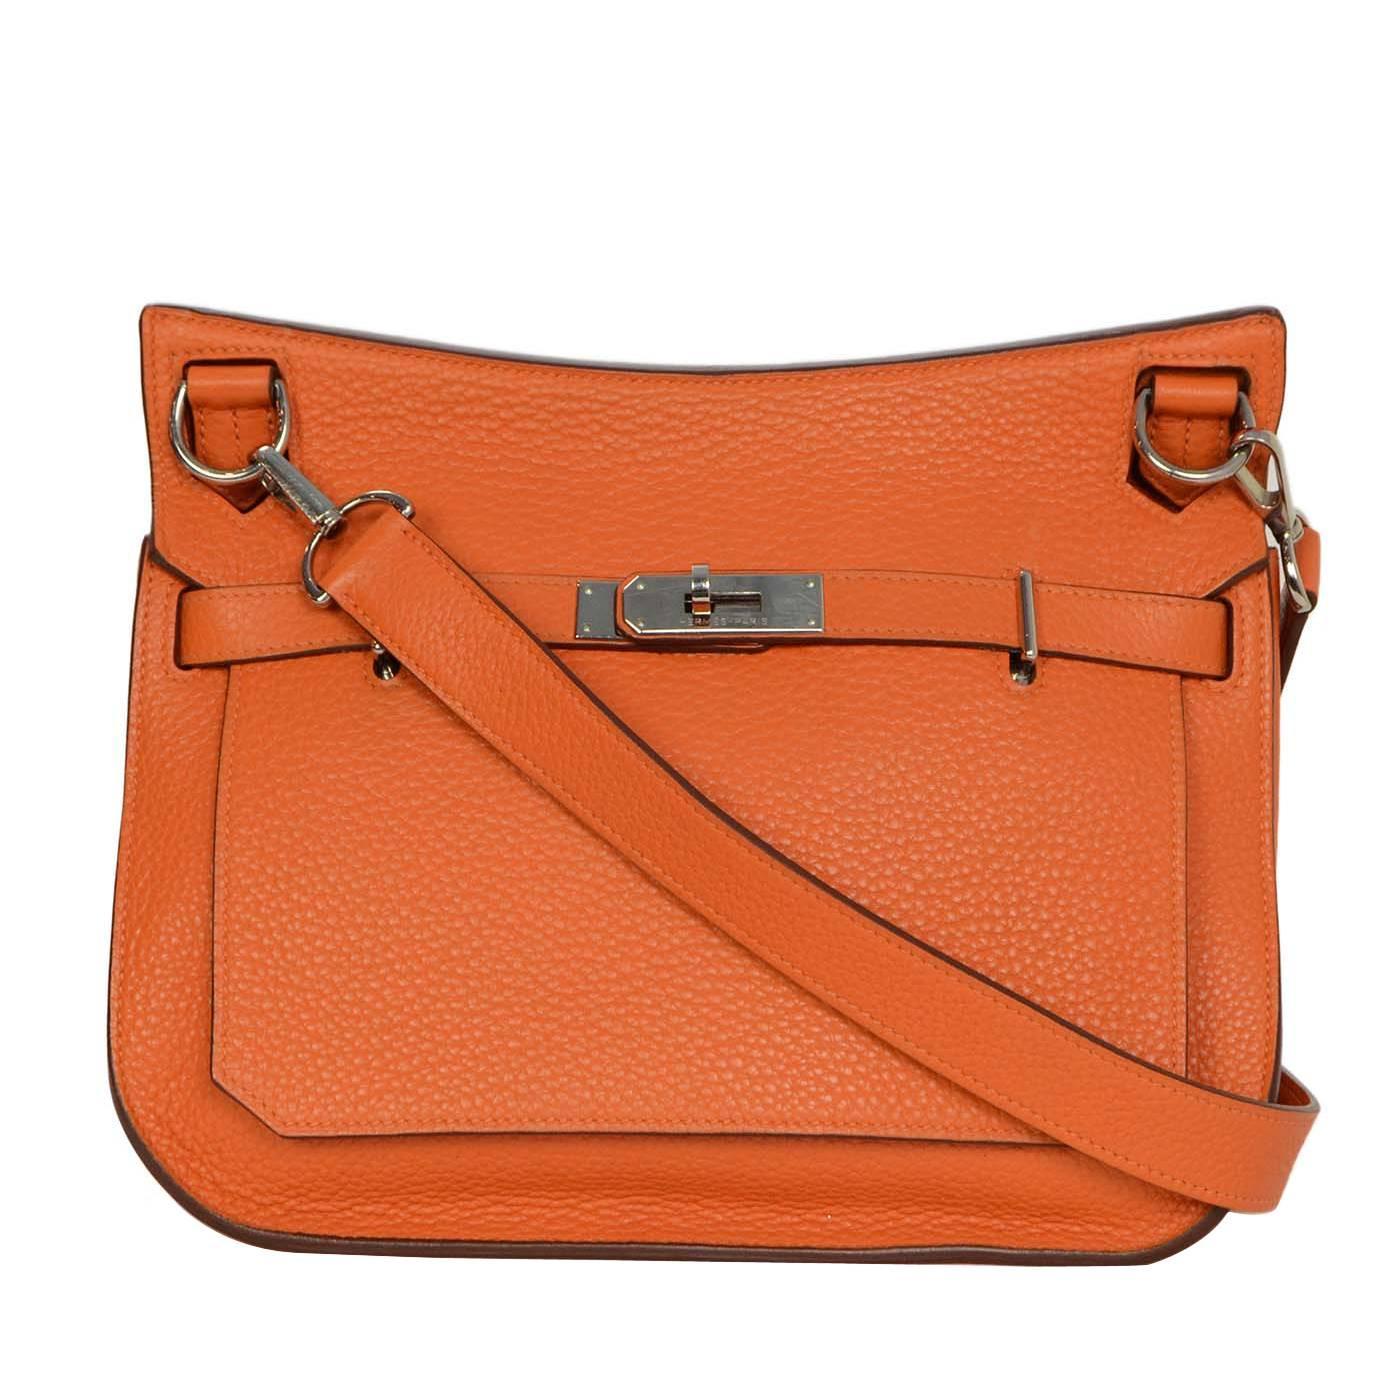 Hermes Orange Clemence 28cm Jypsiere Crossbody Bag PHW rt. $8,500 For Sale at 1stdibs